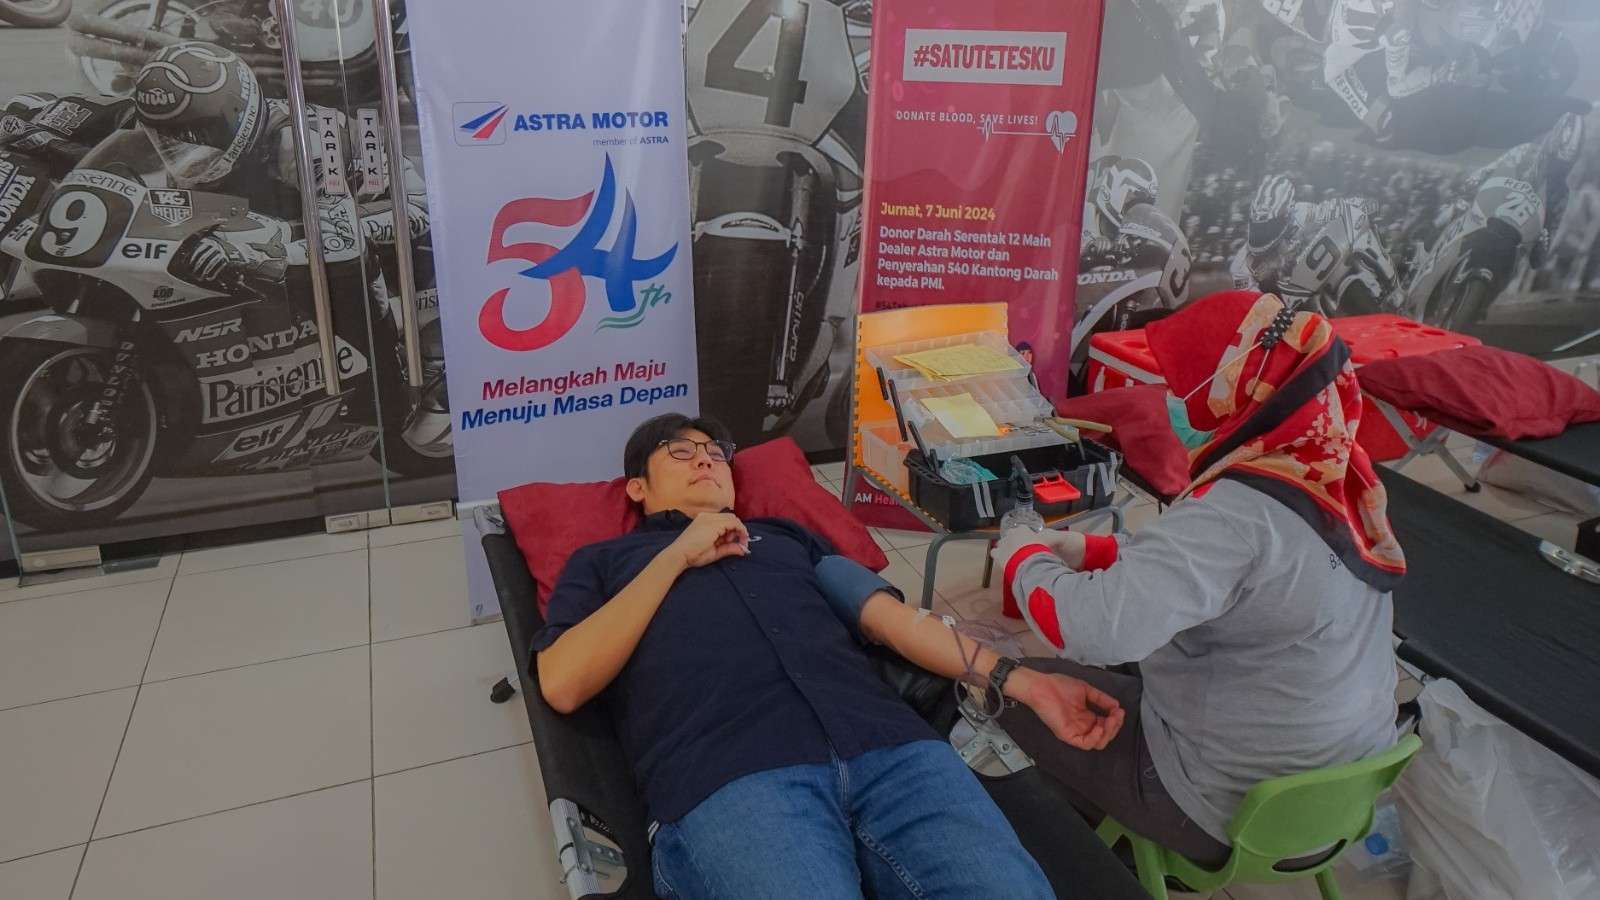 Aksi Donor Darah Serempak #SatuTetesku di HUT ke-54 Tahun Astra Motor